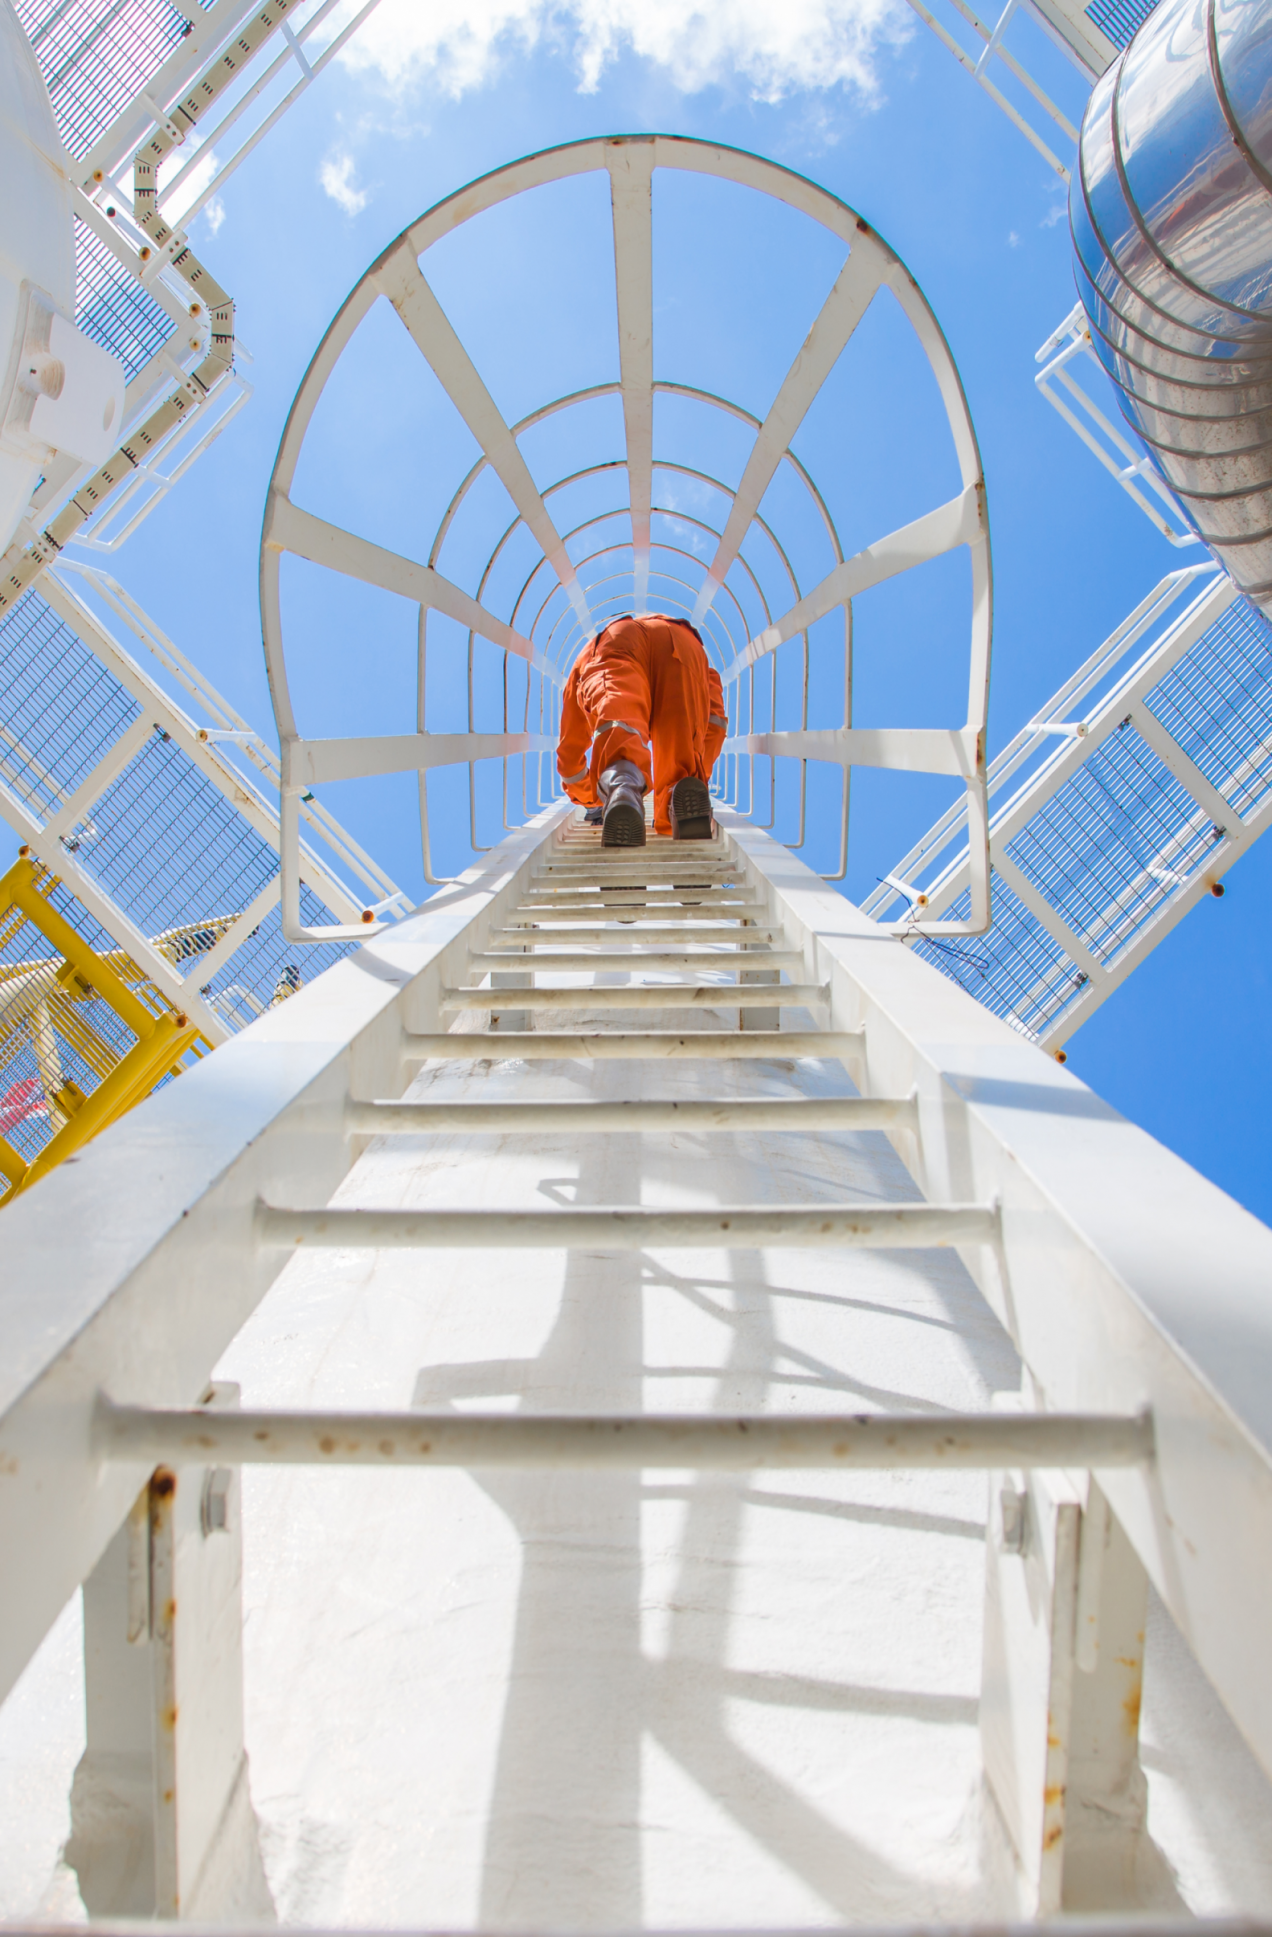 Maintenance Engineer going up a ladder